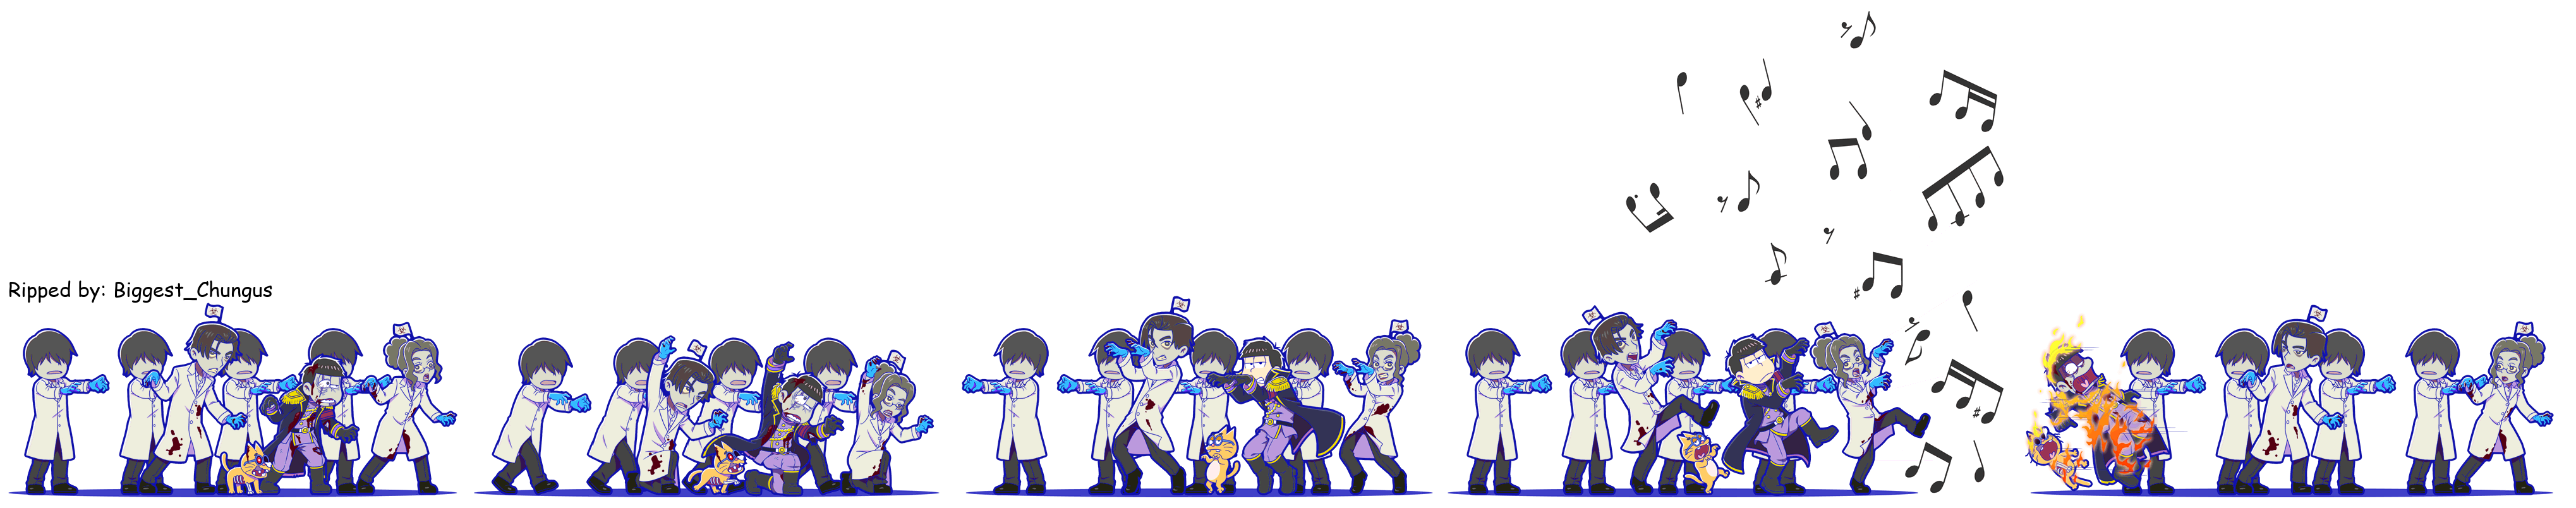 Ichimatsu (Dancin' Zombie Dance)